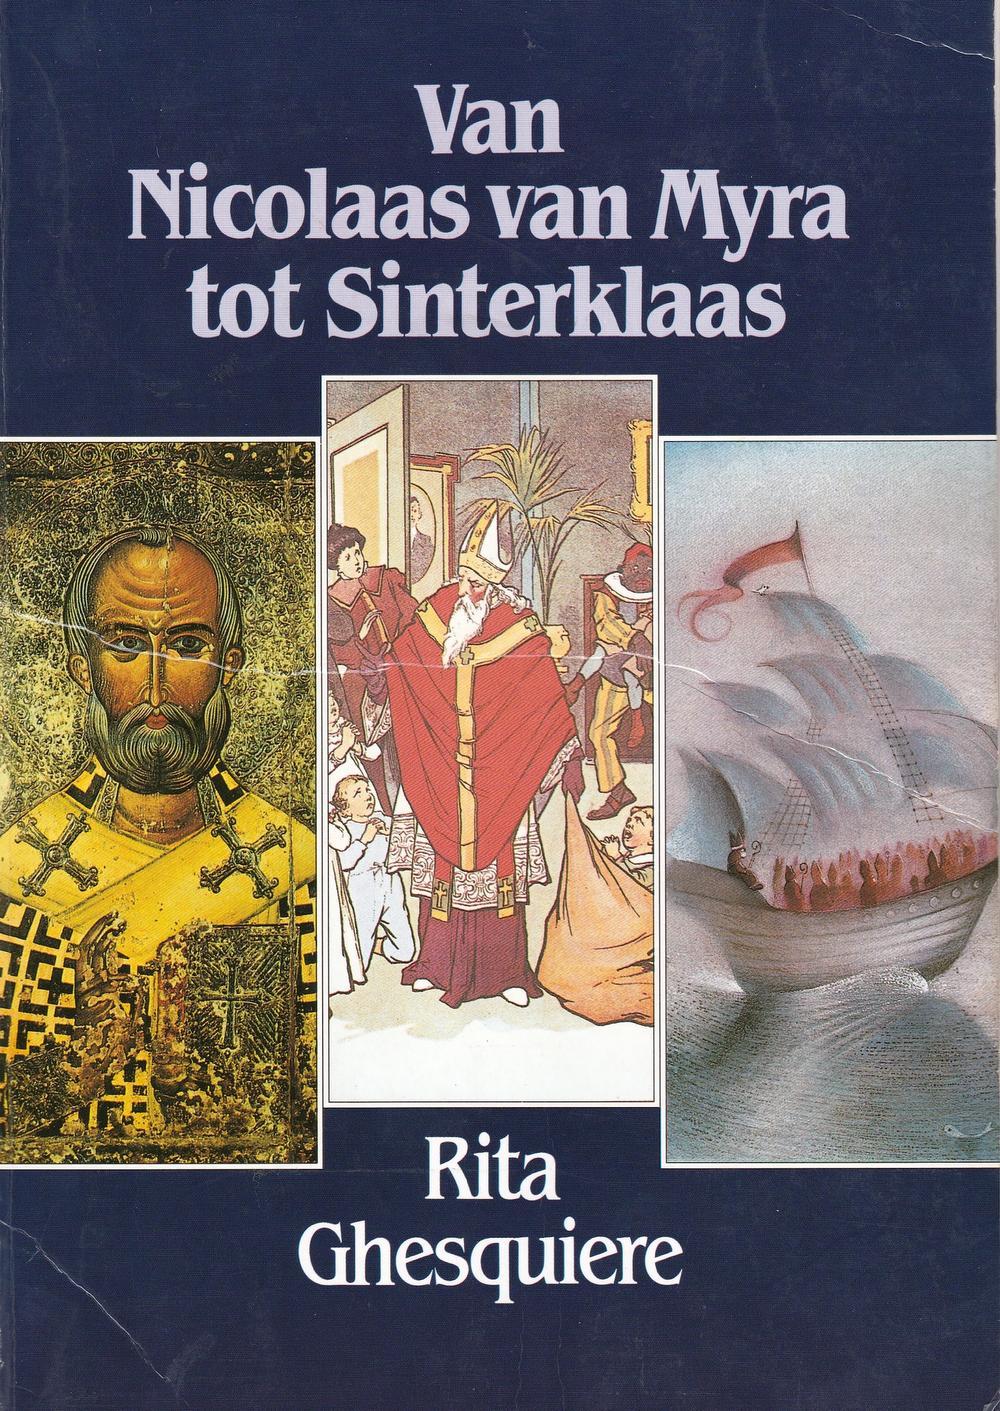 Bij het brede publiek werd prof. Rita Ghesquiere bekend door haar boek over de evolutie van Sinterklaas, dat ze schreef na de geboorte van haar jongste zoon Niclas.